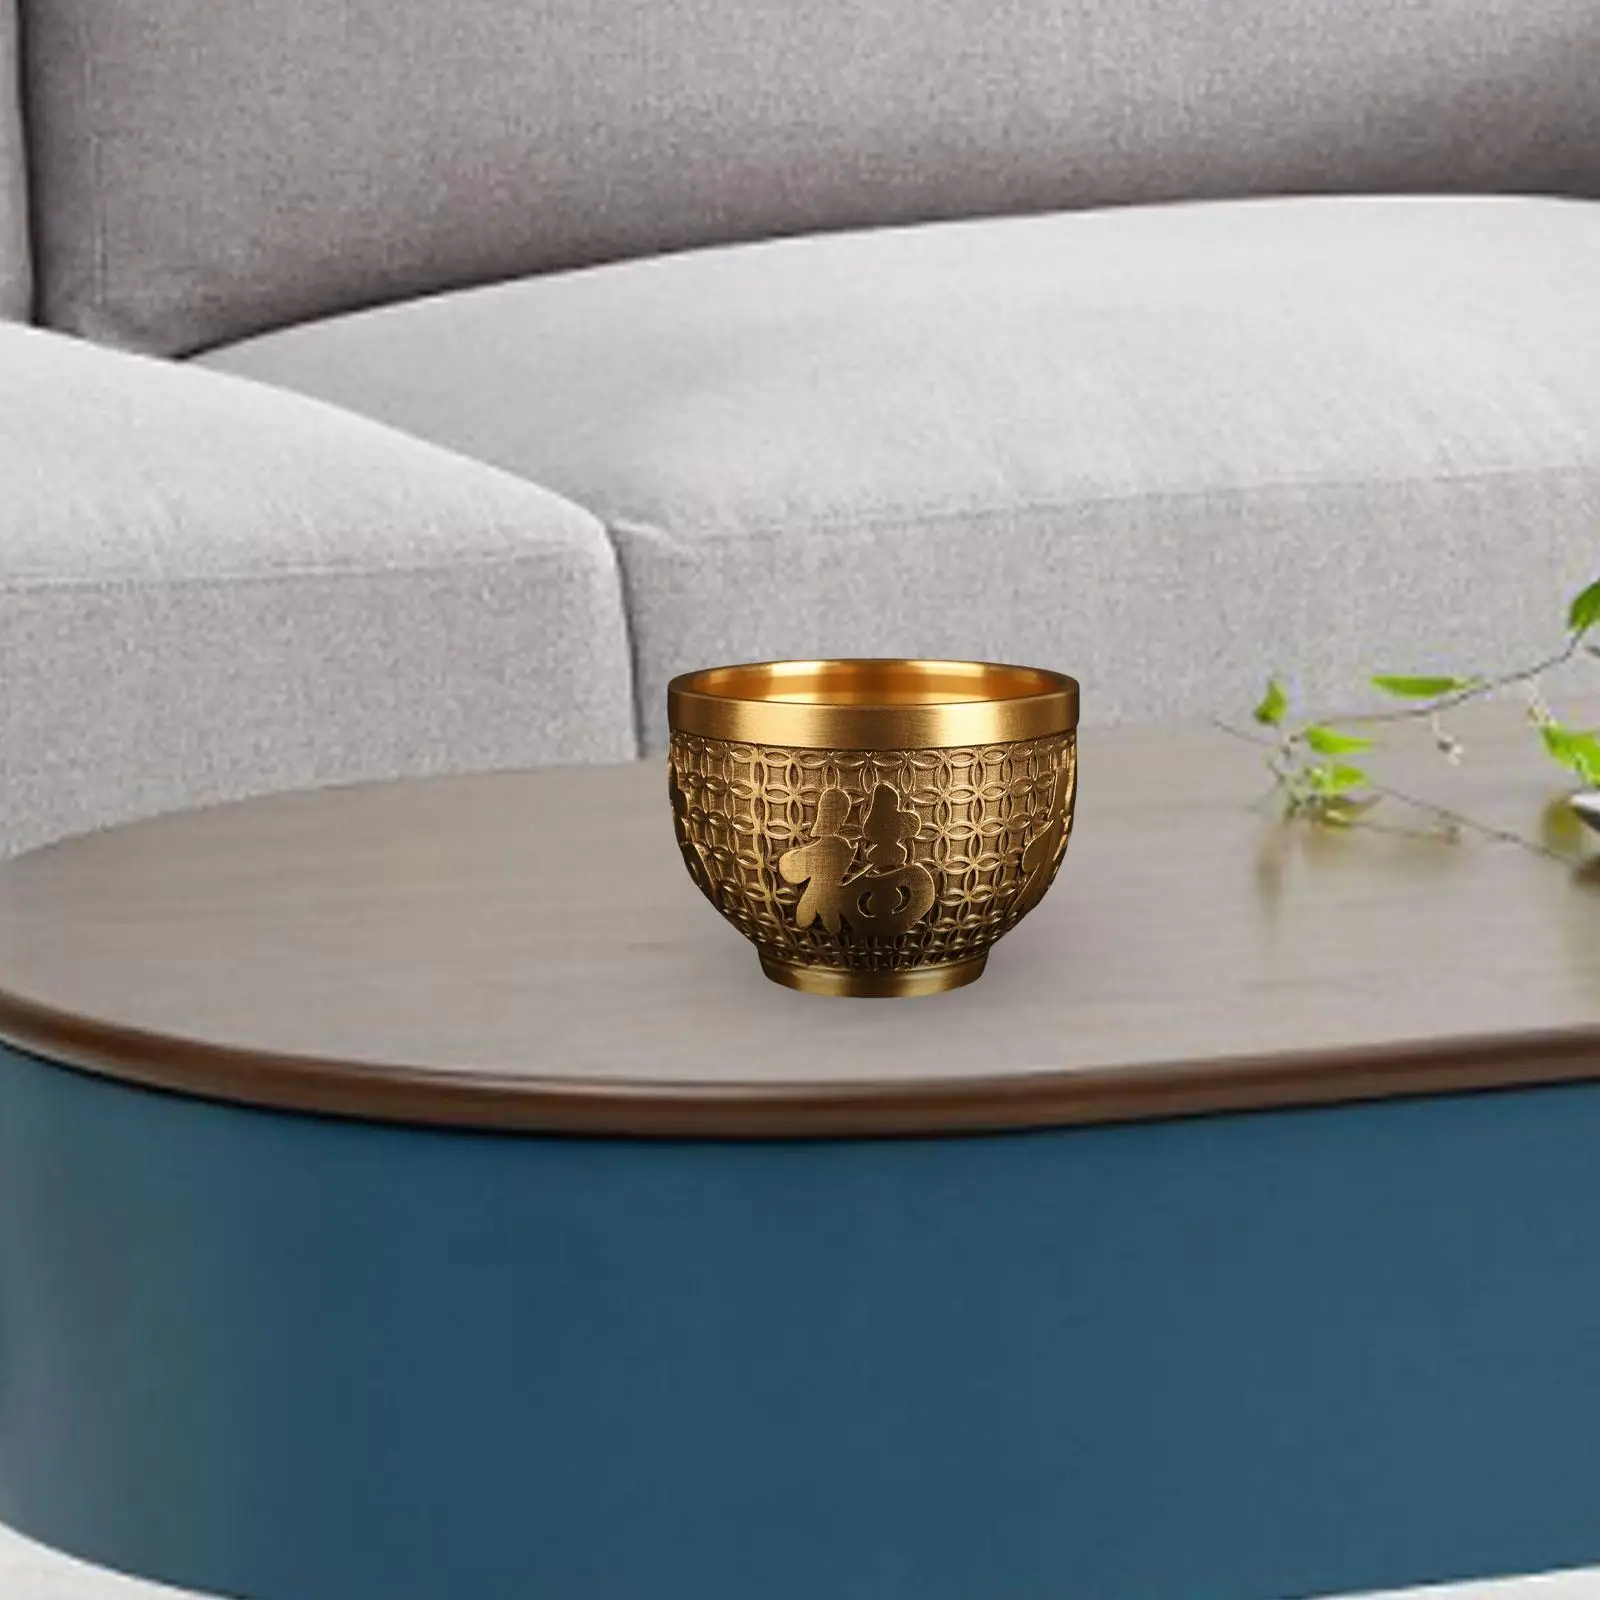 Brass Fu Bowl Copper vat Cylinder Decoration Luck Wealth Feng Shui Bowl